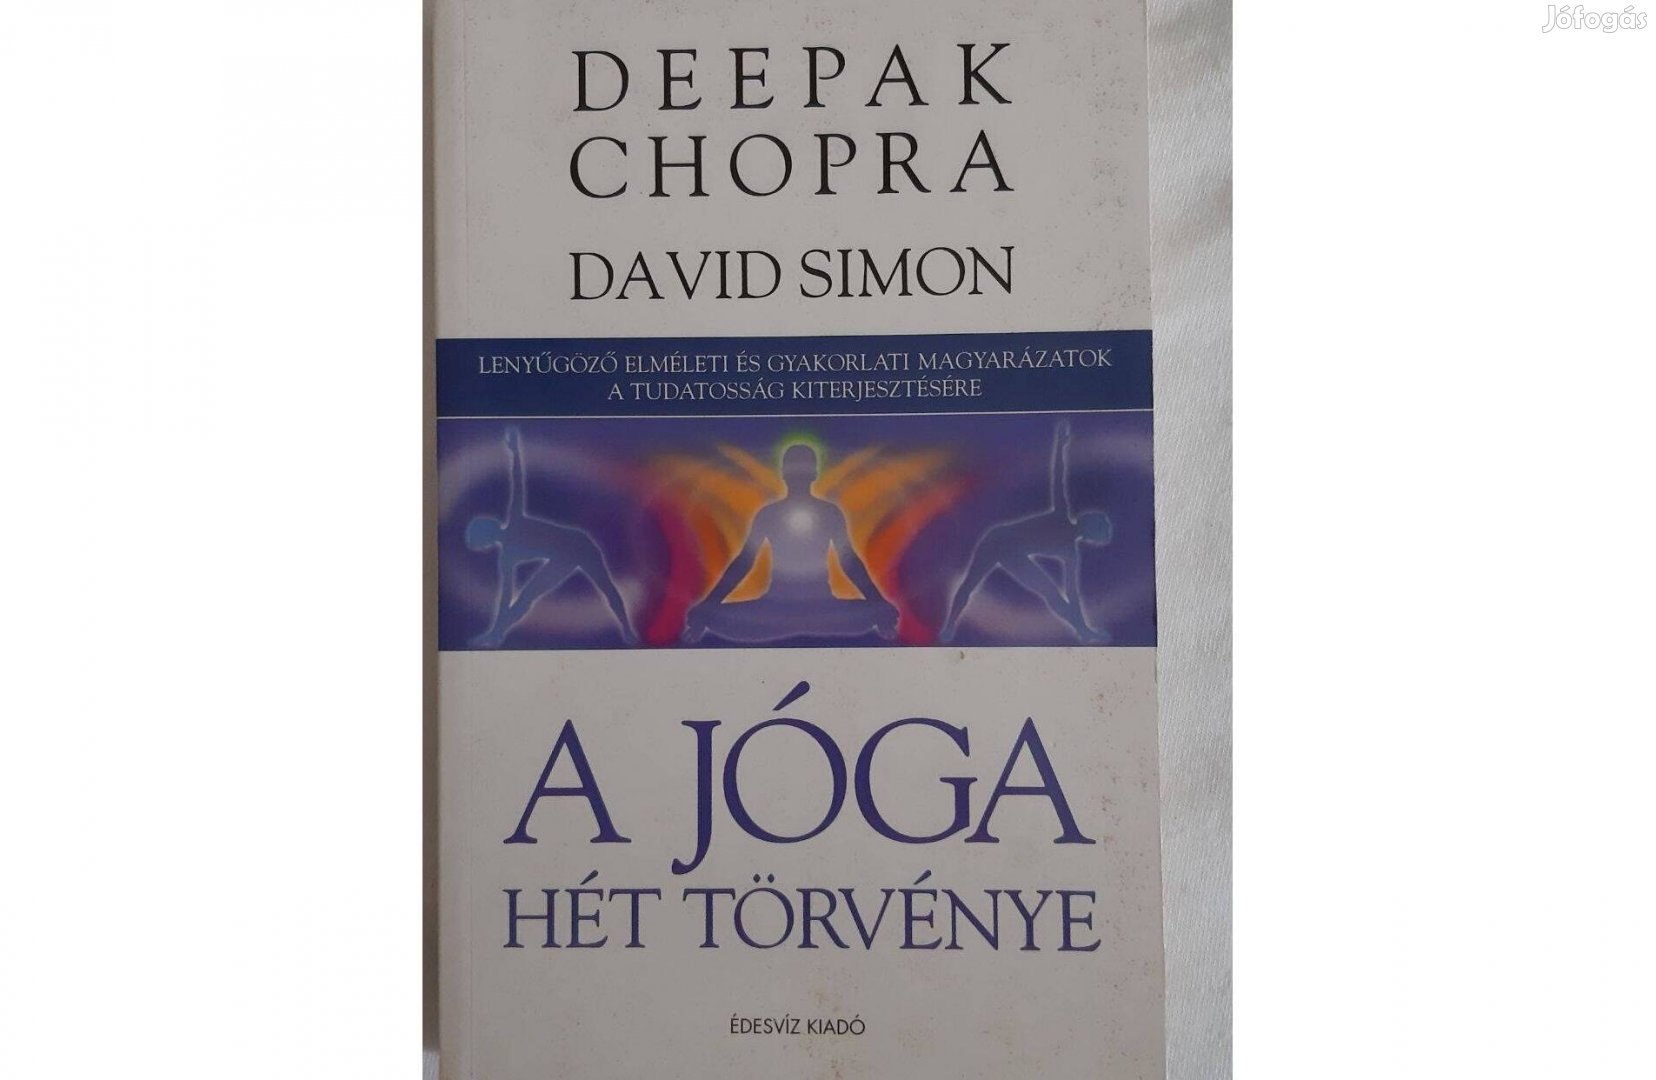 A jóga hét törvénye (Deepak Chopra)